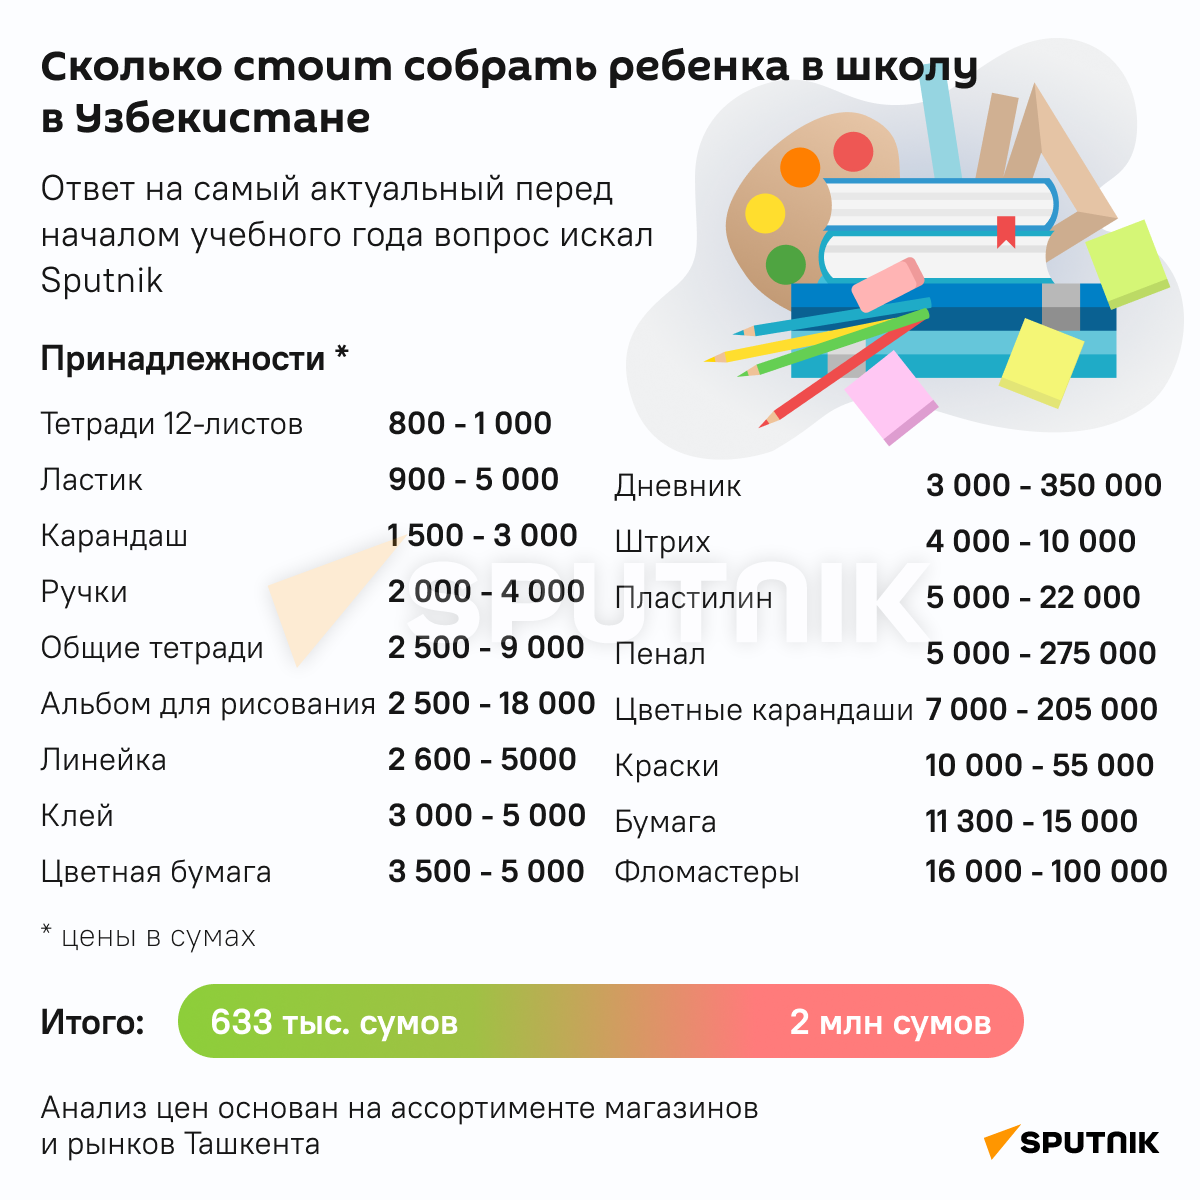 Сколько стоит собрать ребенка в школу - Sputnik Узбекистан